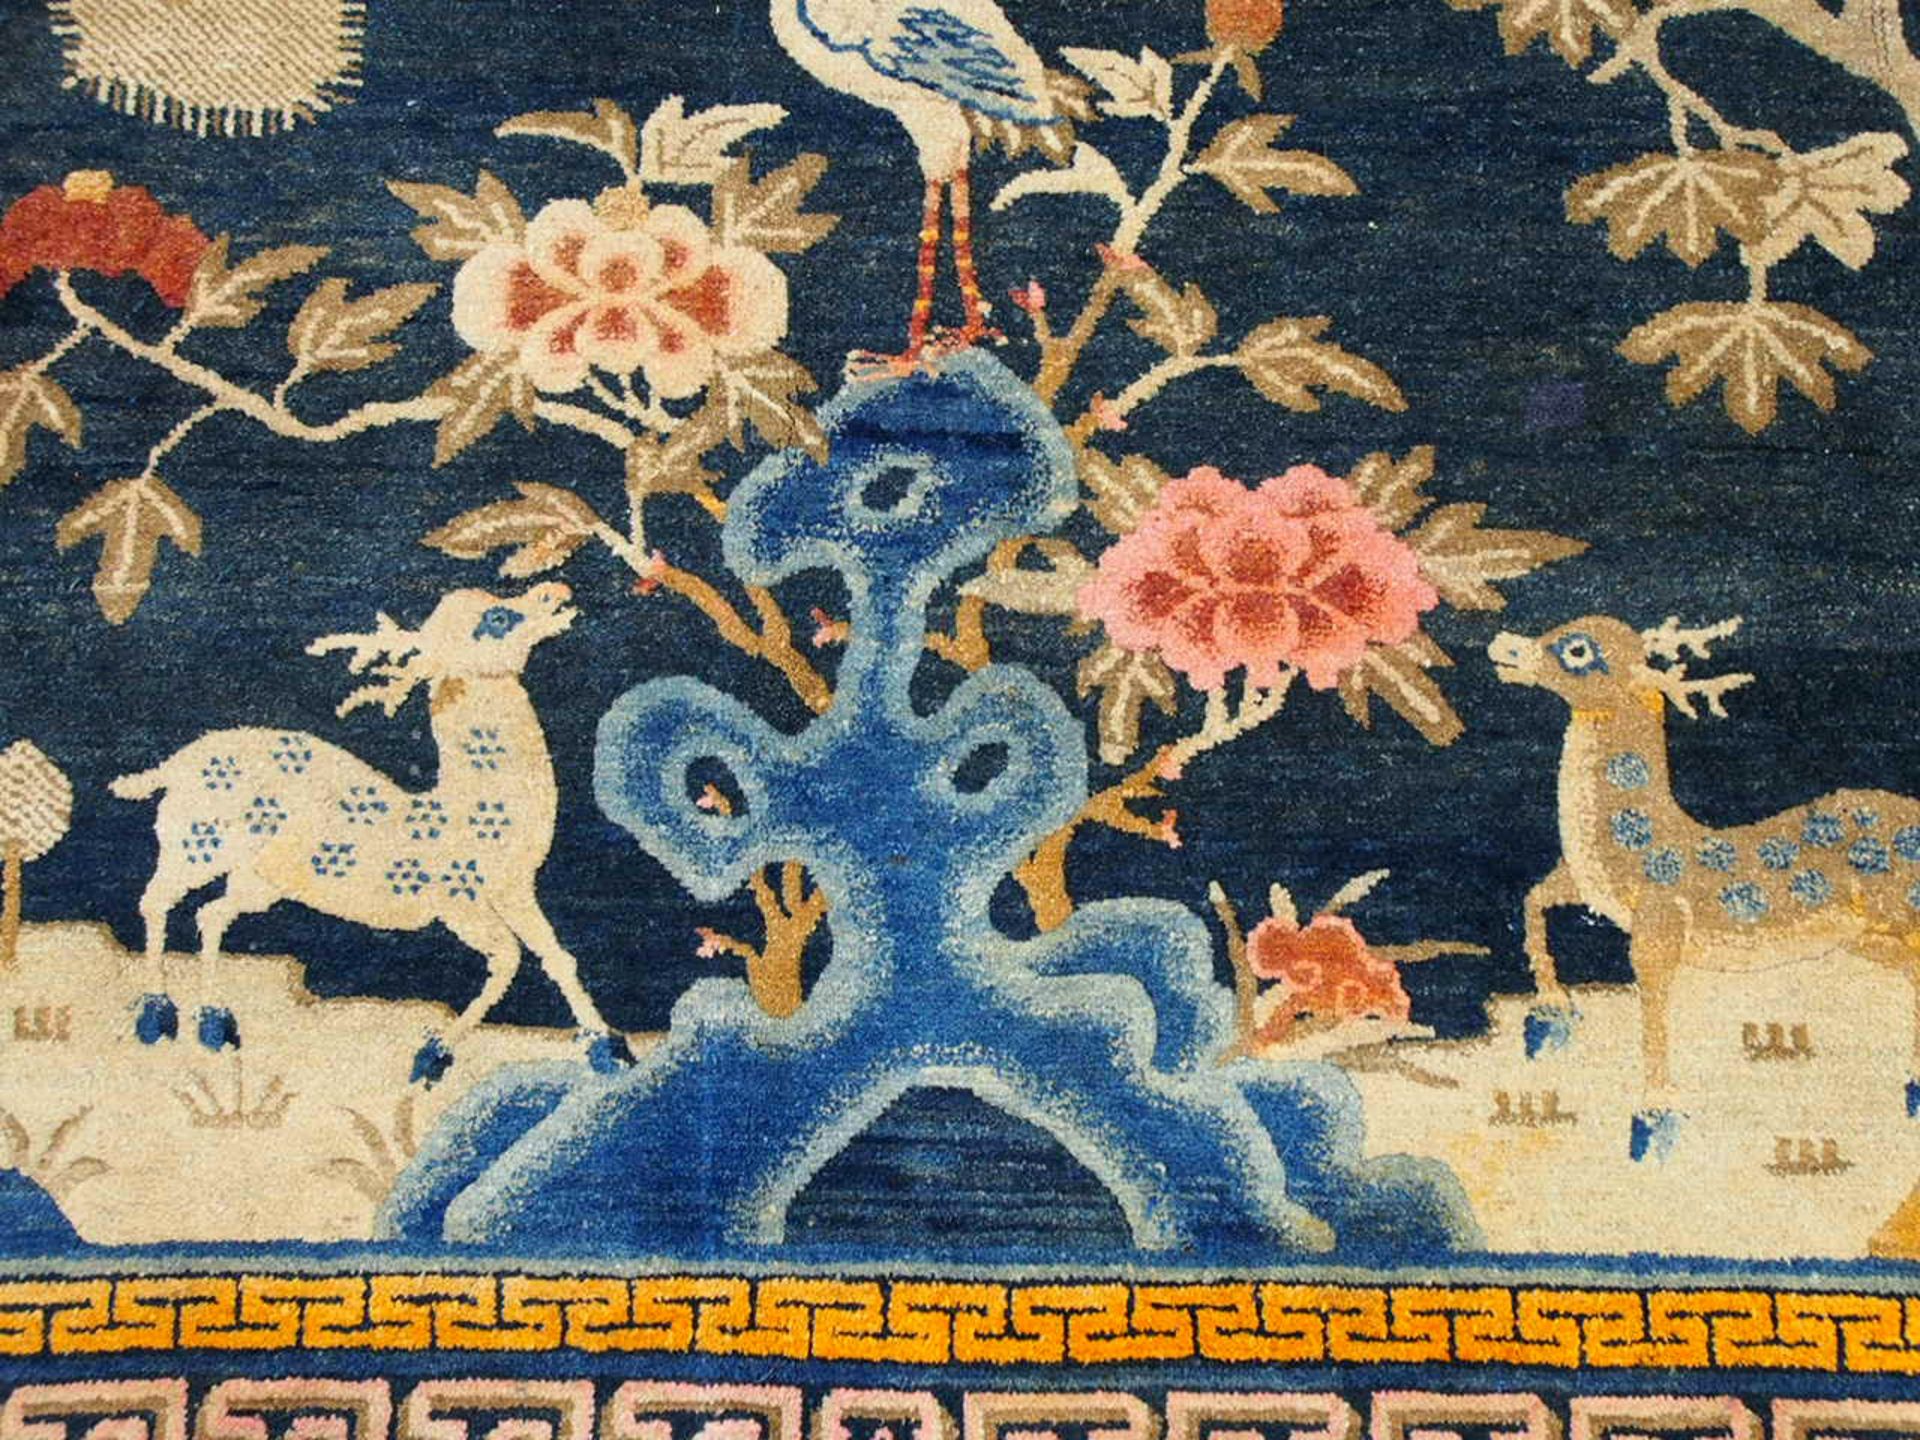 Teppich China, 128 x 200 cm, Zustand B/C, um 1900 - Bild 3 aus 3